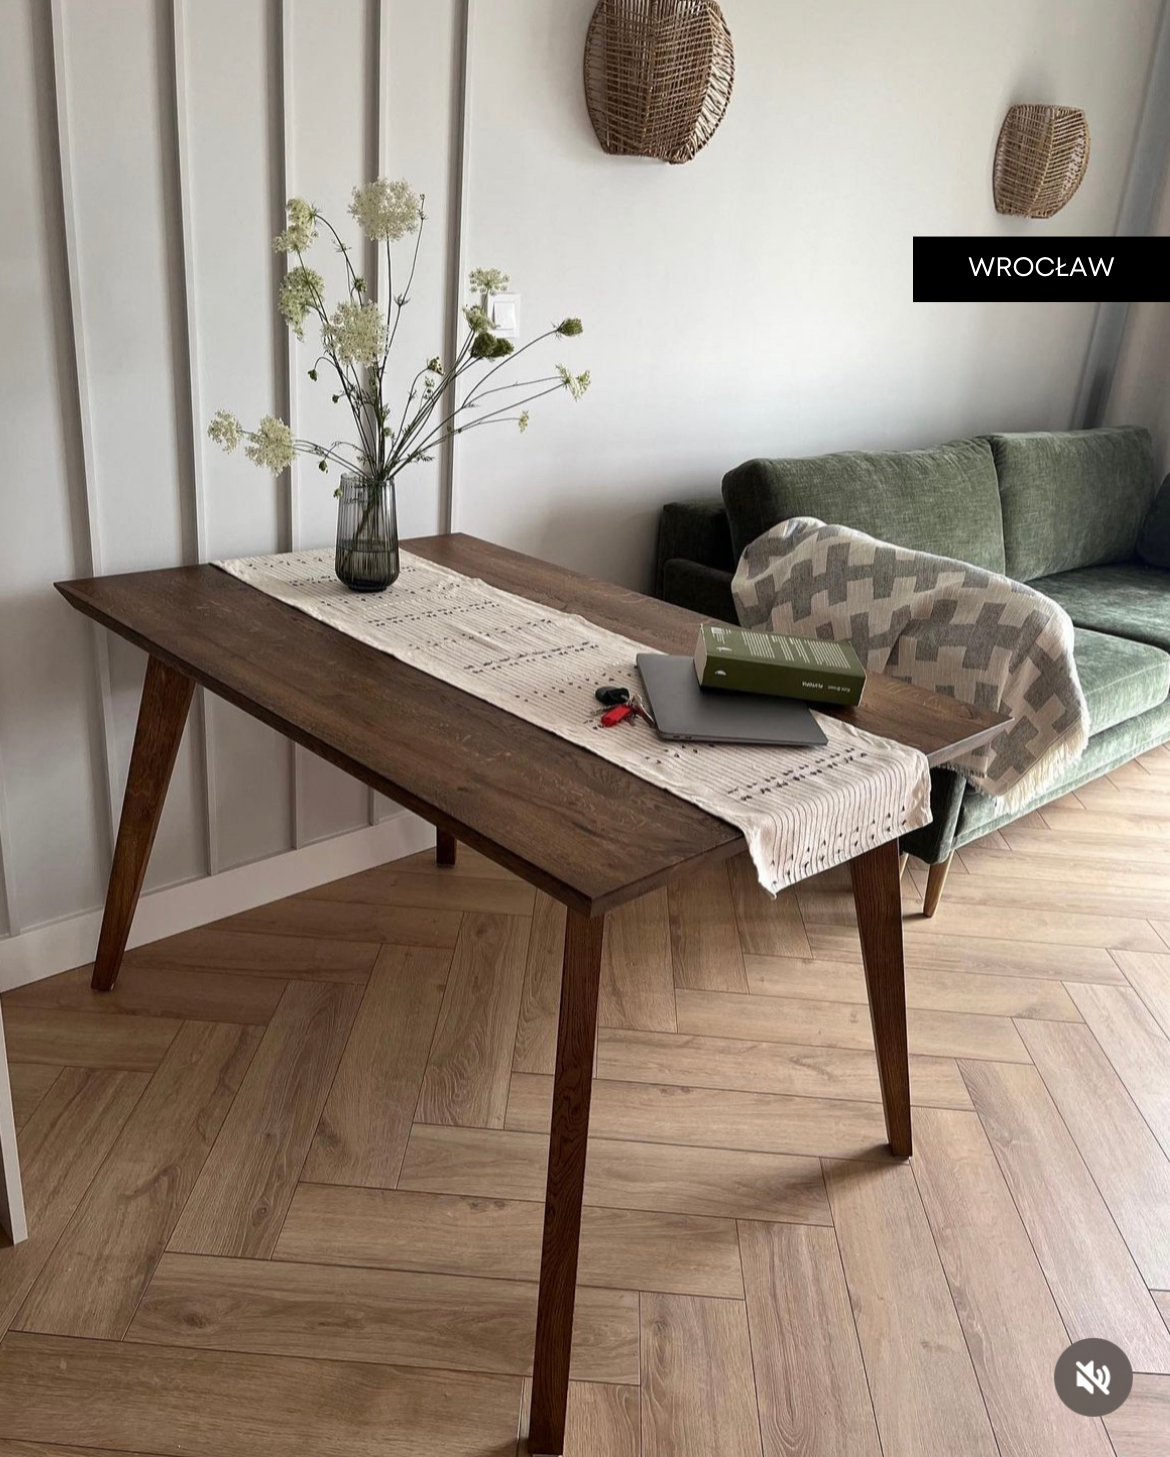 "stół dębowy MIDO - meble drewniane na wymiar - loftowe, industrialne, skandynawskie”